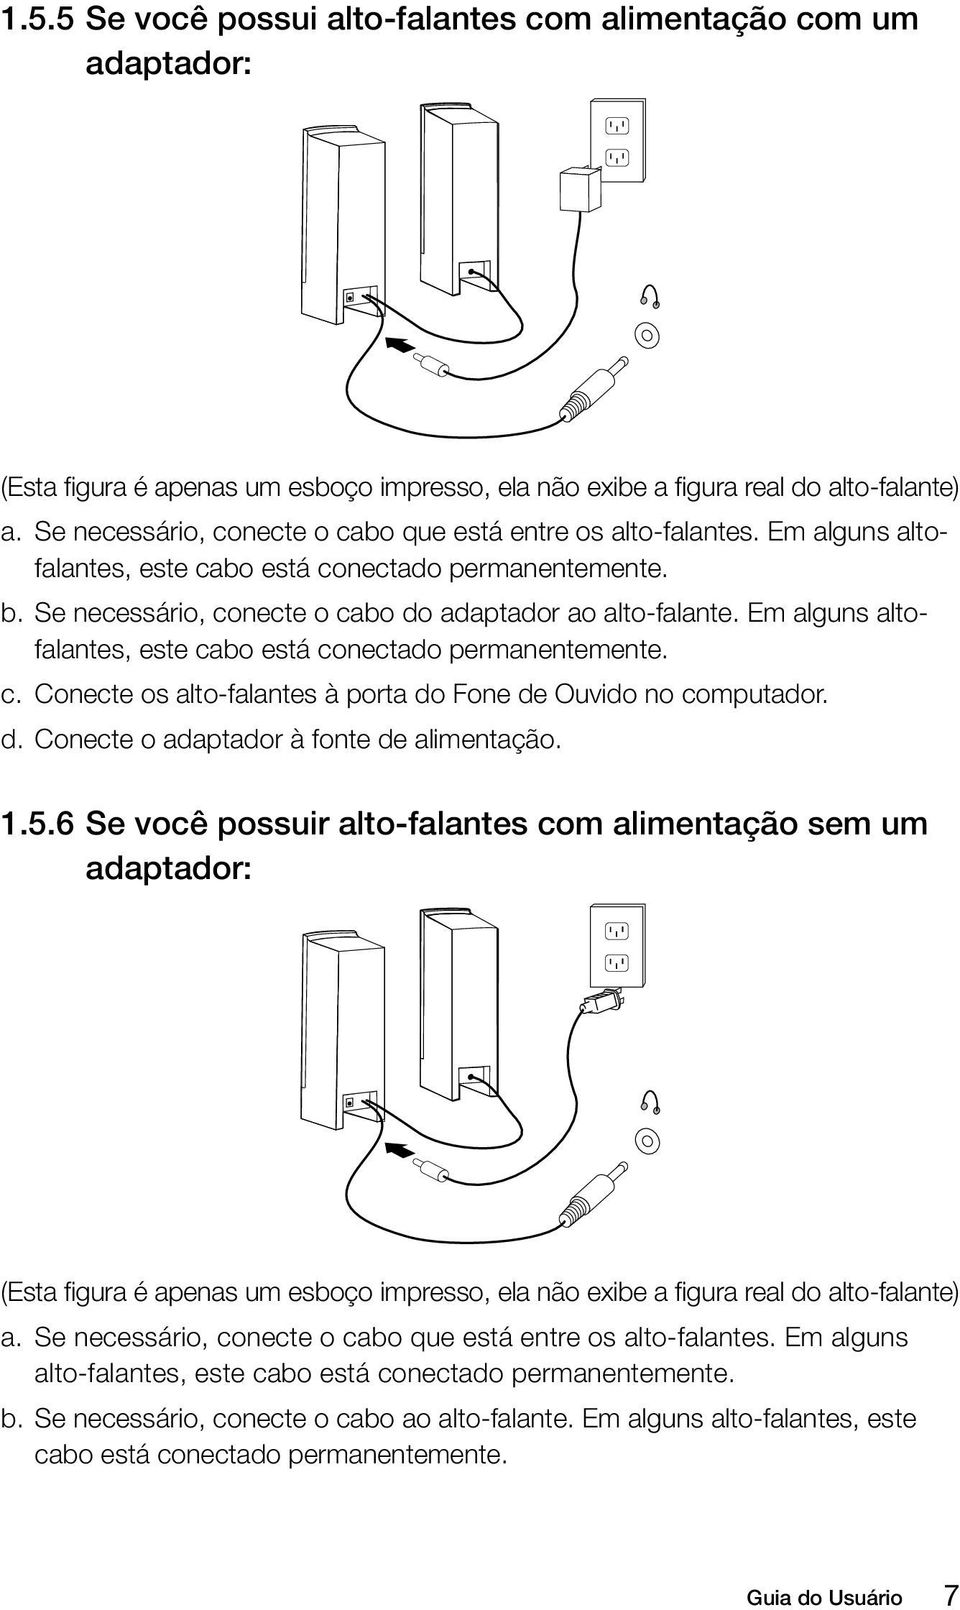 Em alguns altofalantes, este cabo está conectado permanentemente. c. Conecte os alto-falantes à porta do Fone de Ouvido no computador. d. Conecte o adaptador à fonte de alimentação. 1.5.